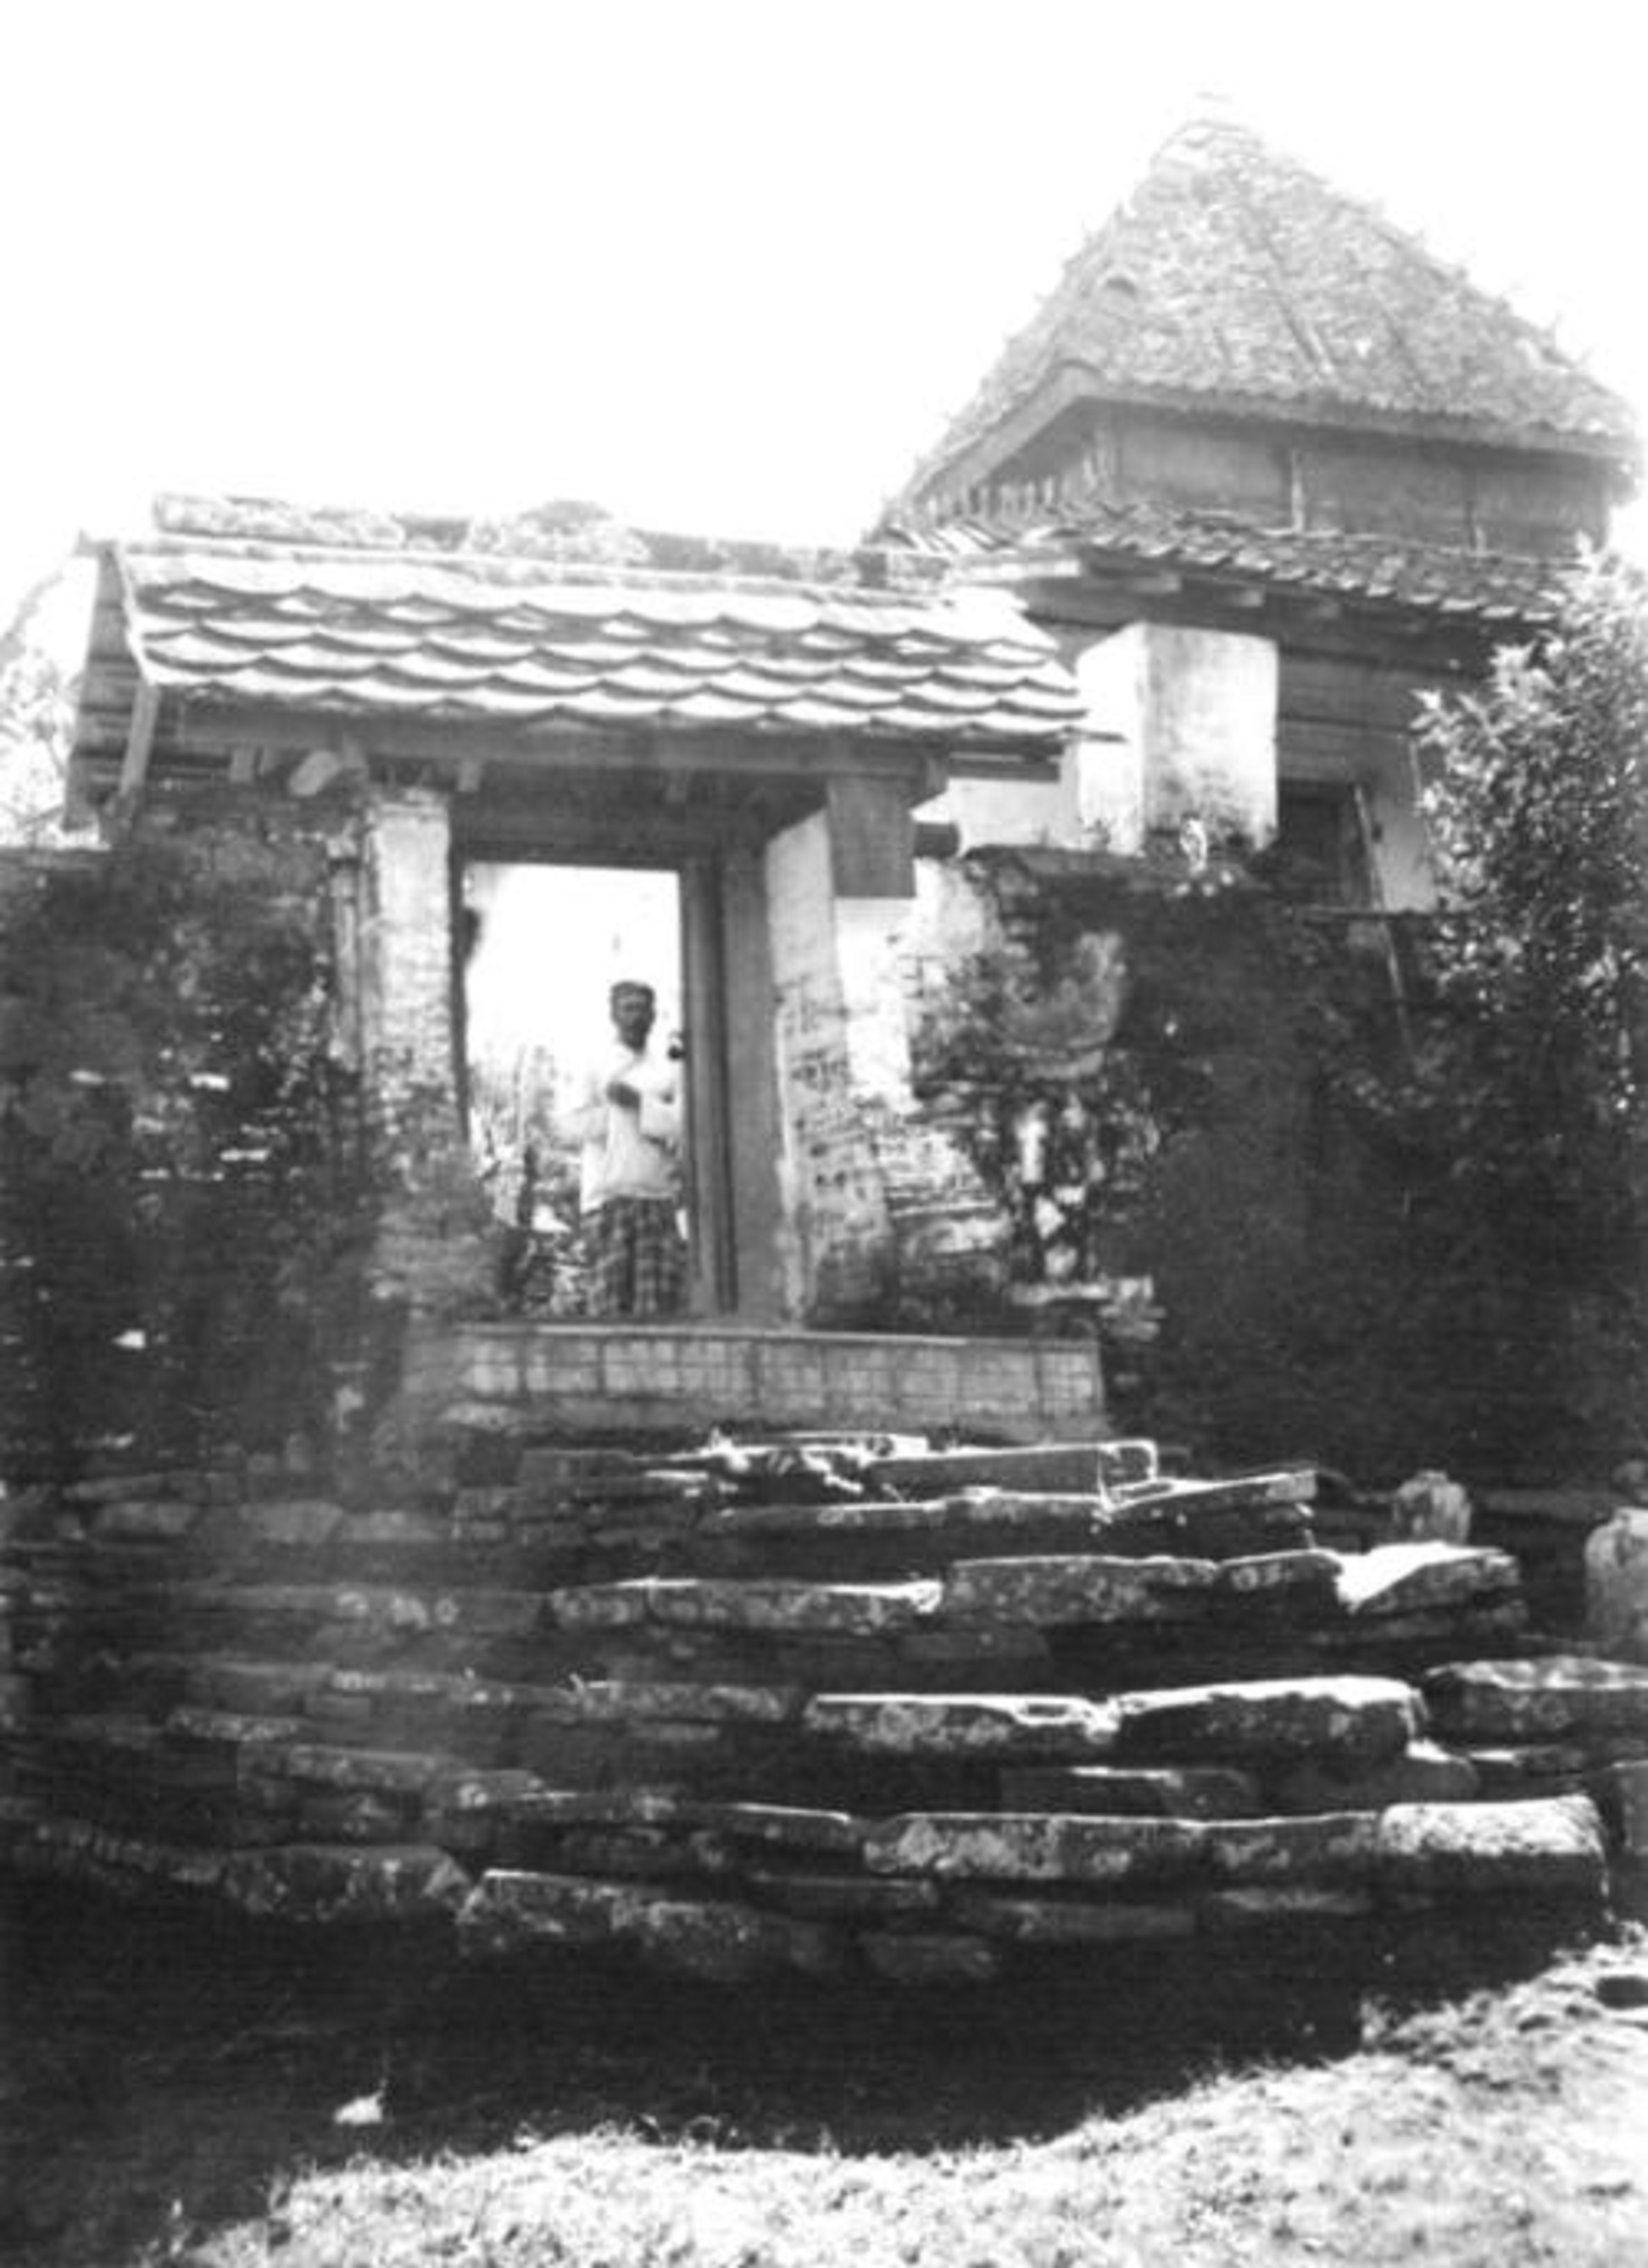 Suasana Muria pada 1937 Koleksi Adib Rifqi Setiawan (alobatnic)